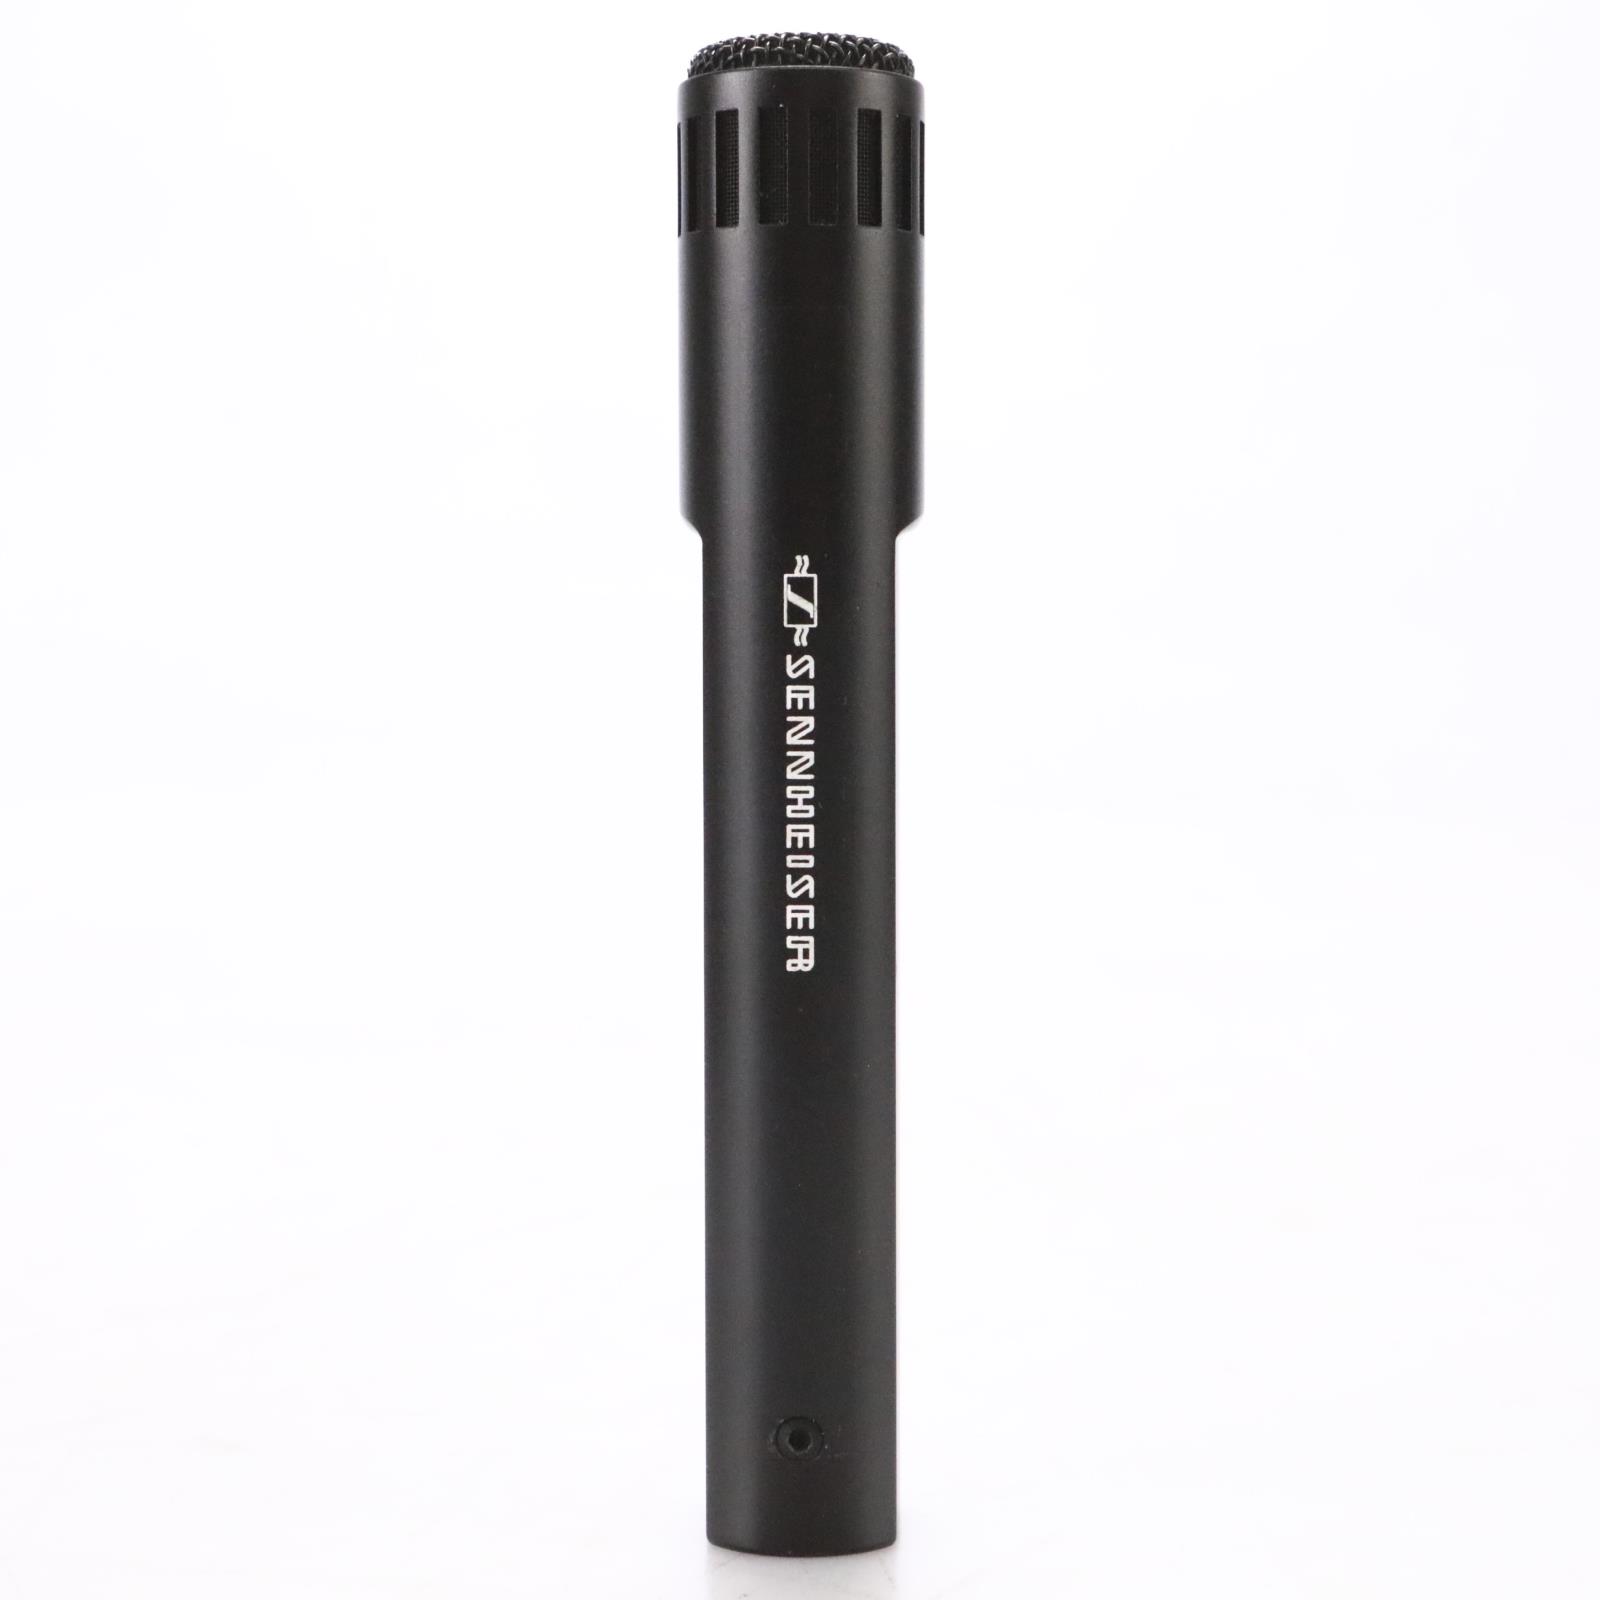 Sennheiser MKH-50 Small Diaphragm Condenser Microphone w/ Box & Clip #48908